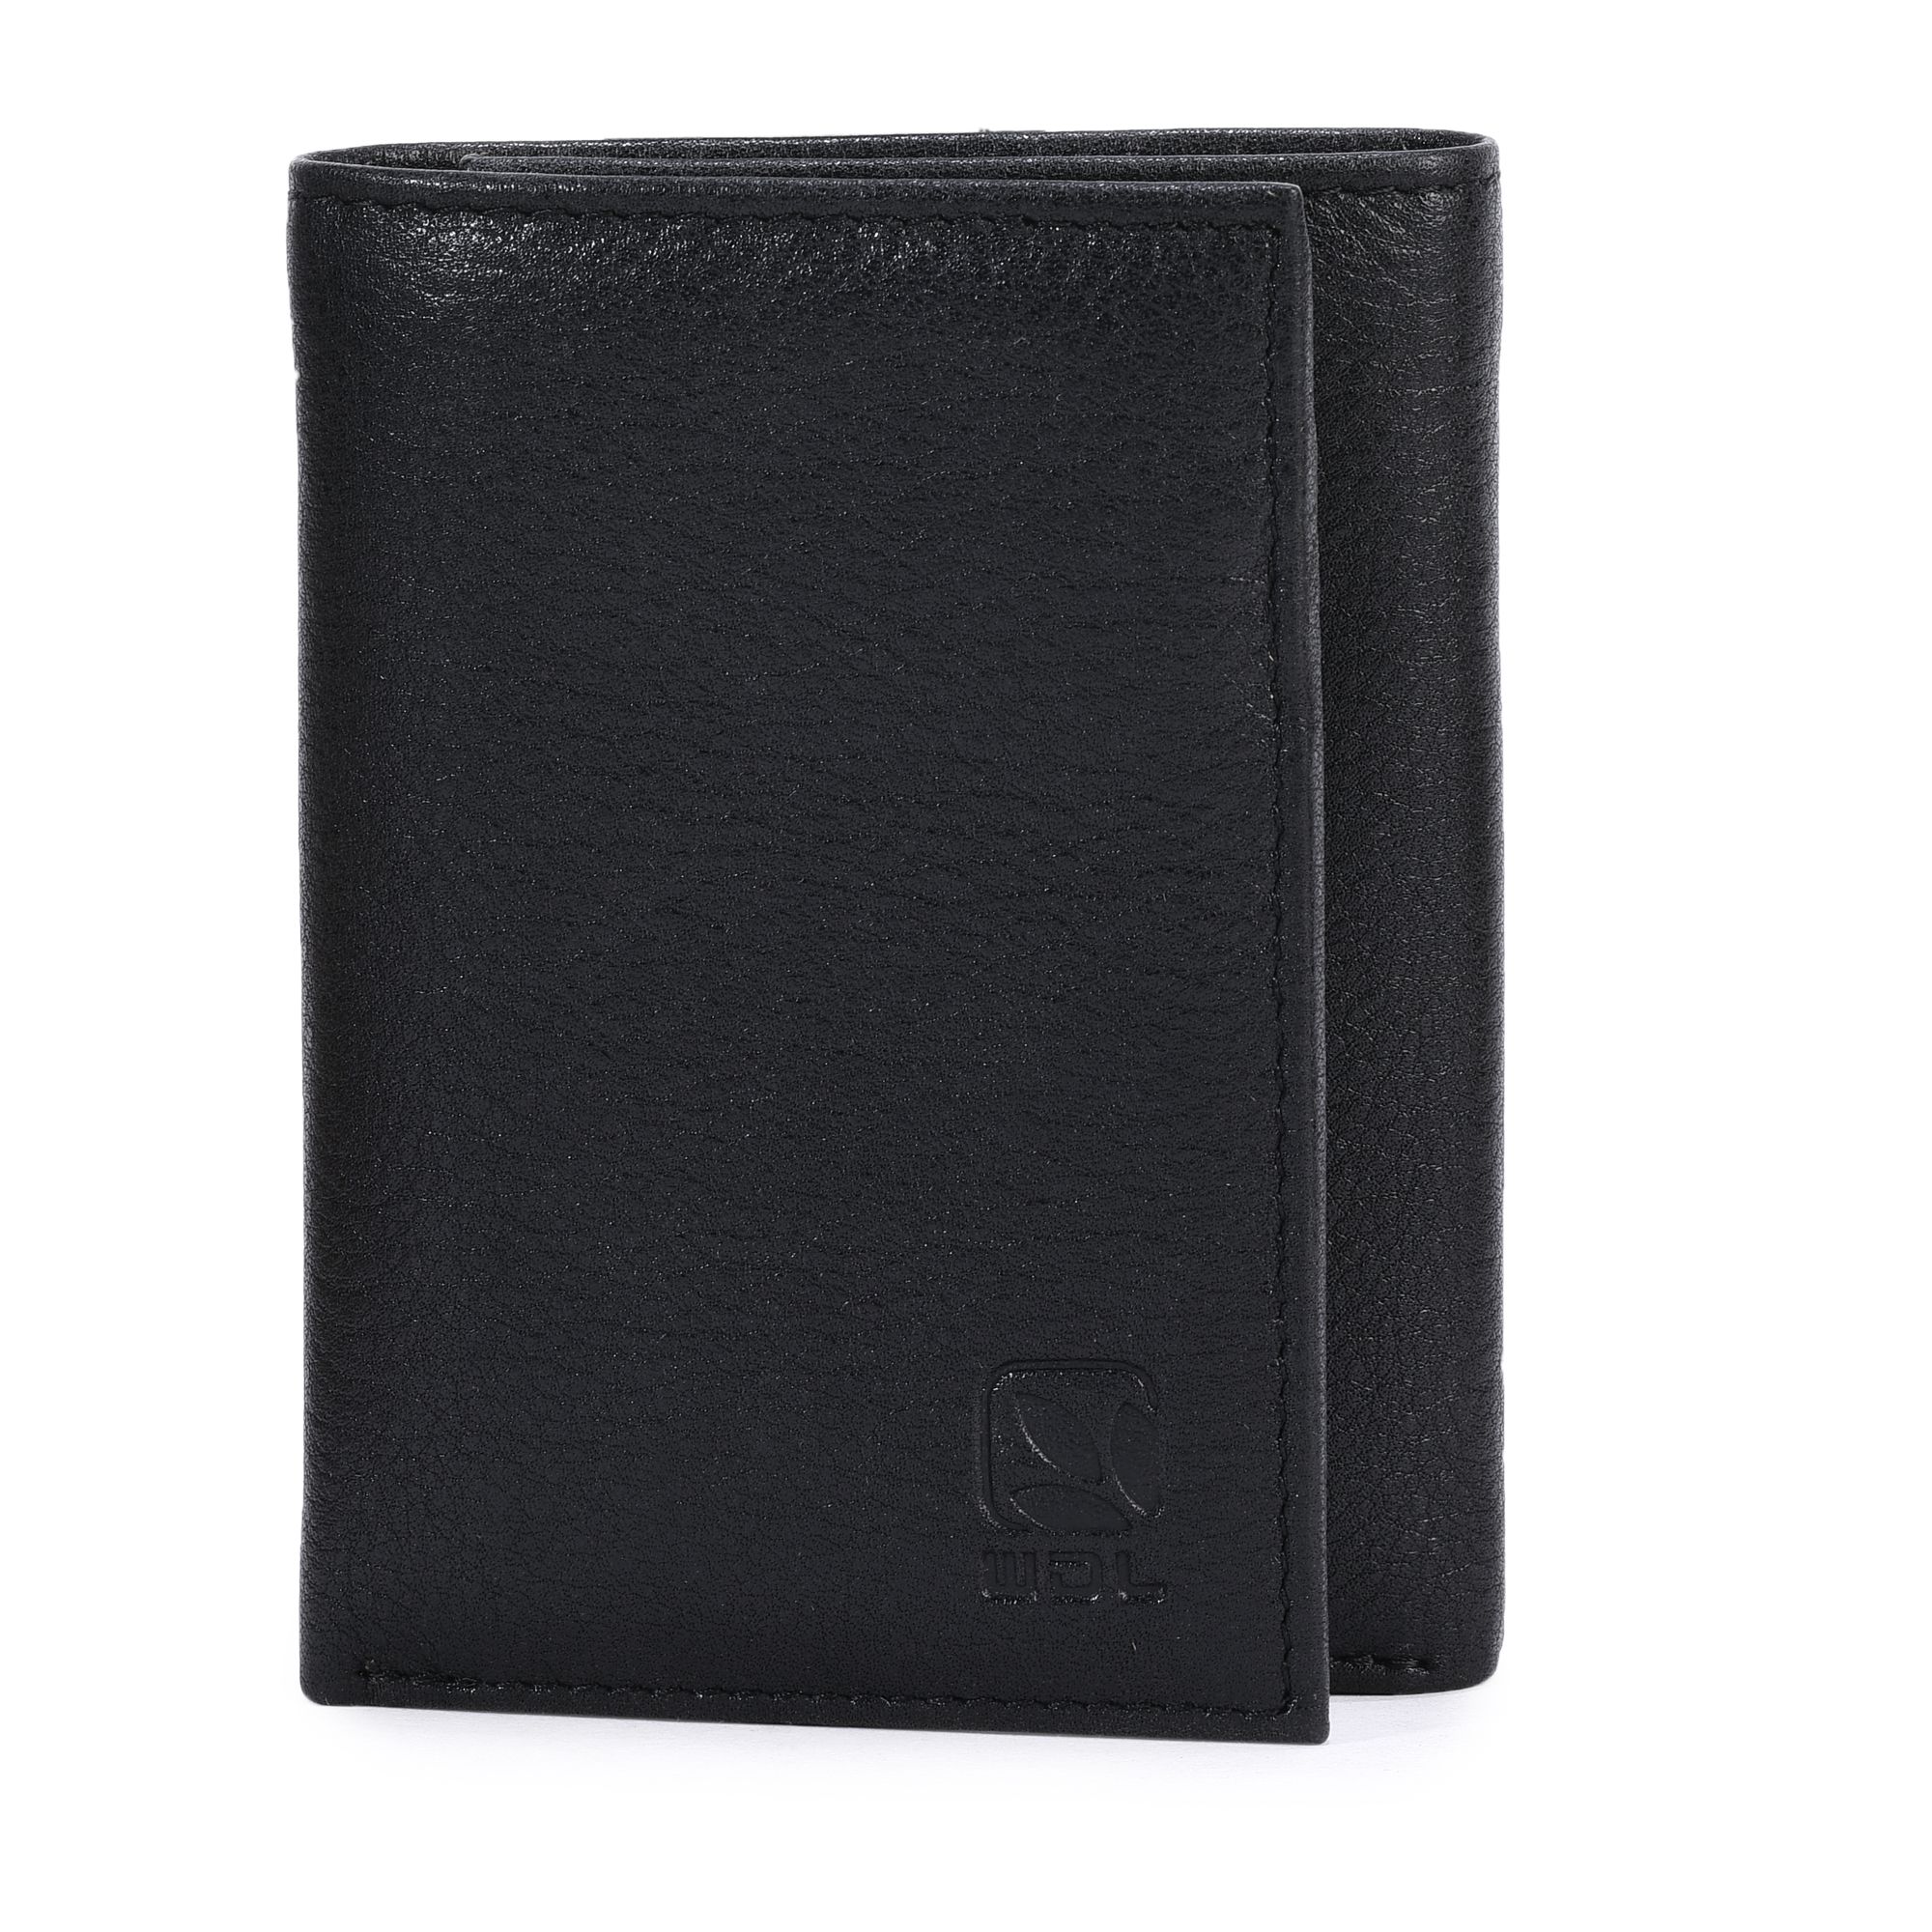 Black trifold wallet for men